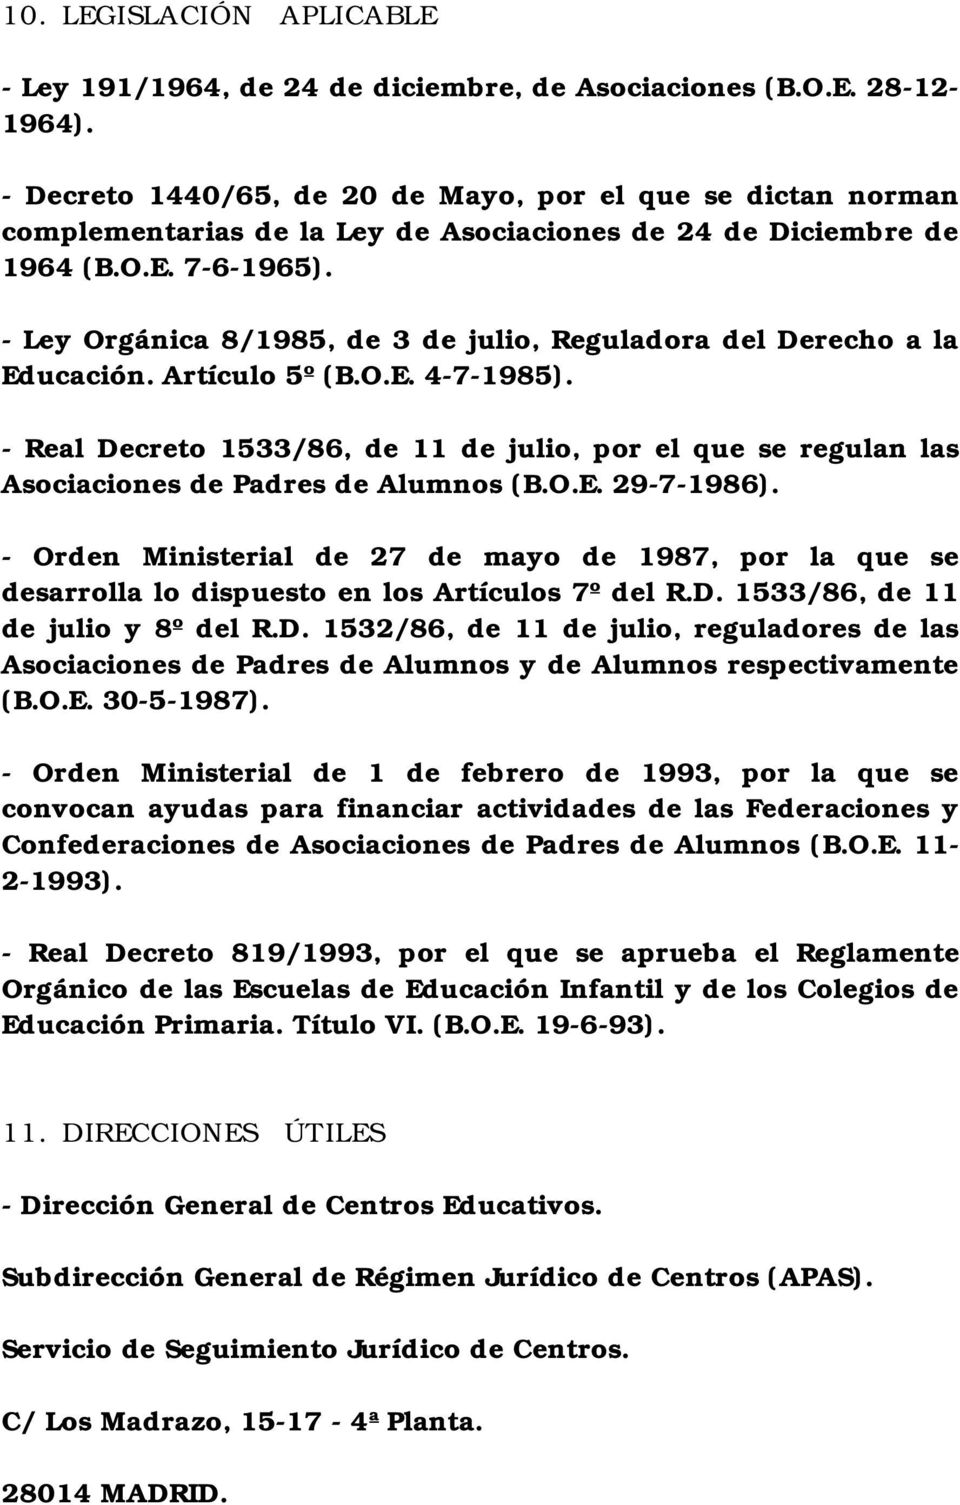 - Ley Orgánica 8/1985, de 3 de julio, Reguladora del Derecho a la Educación. Artículo 5º (B.O.E. 4-7-1985).